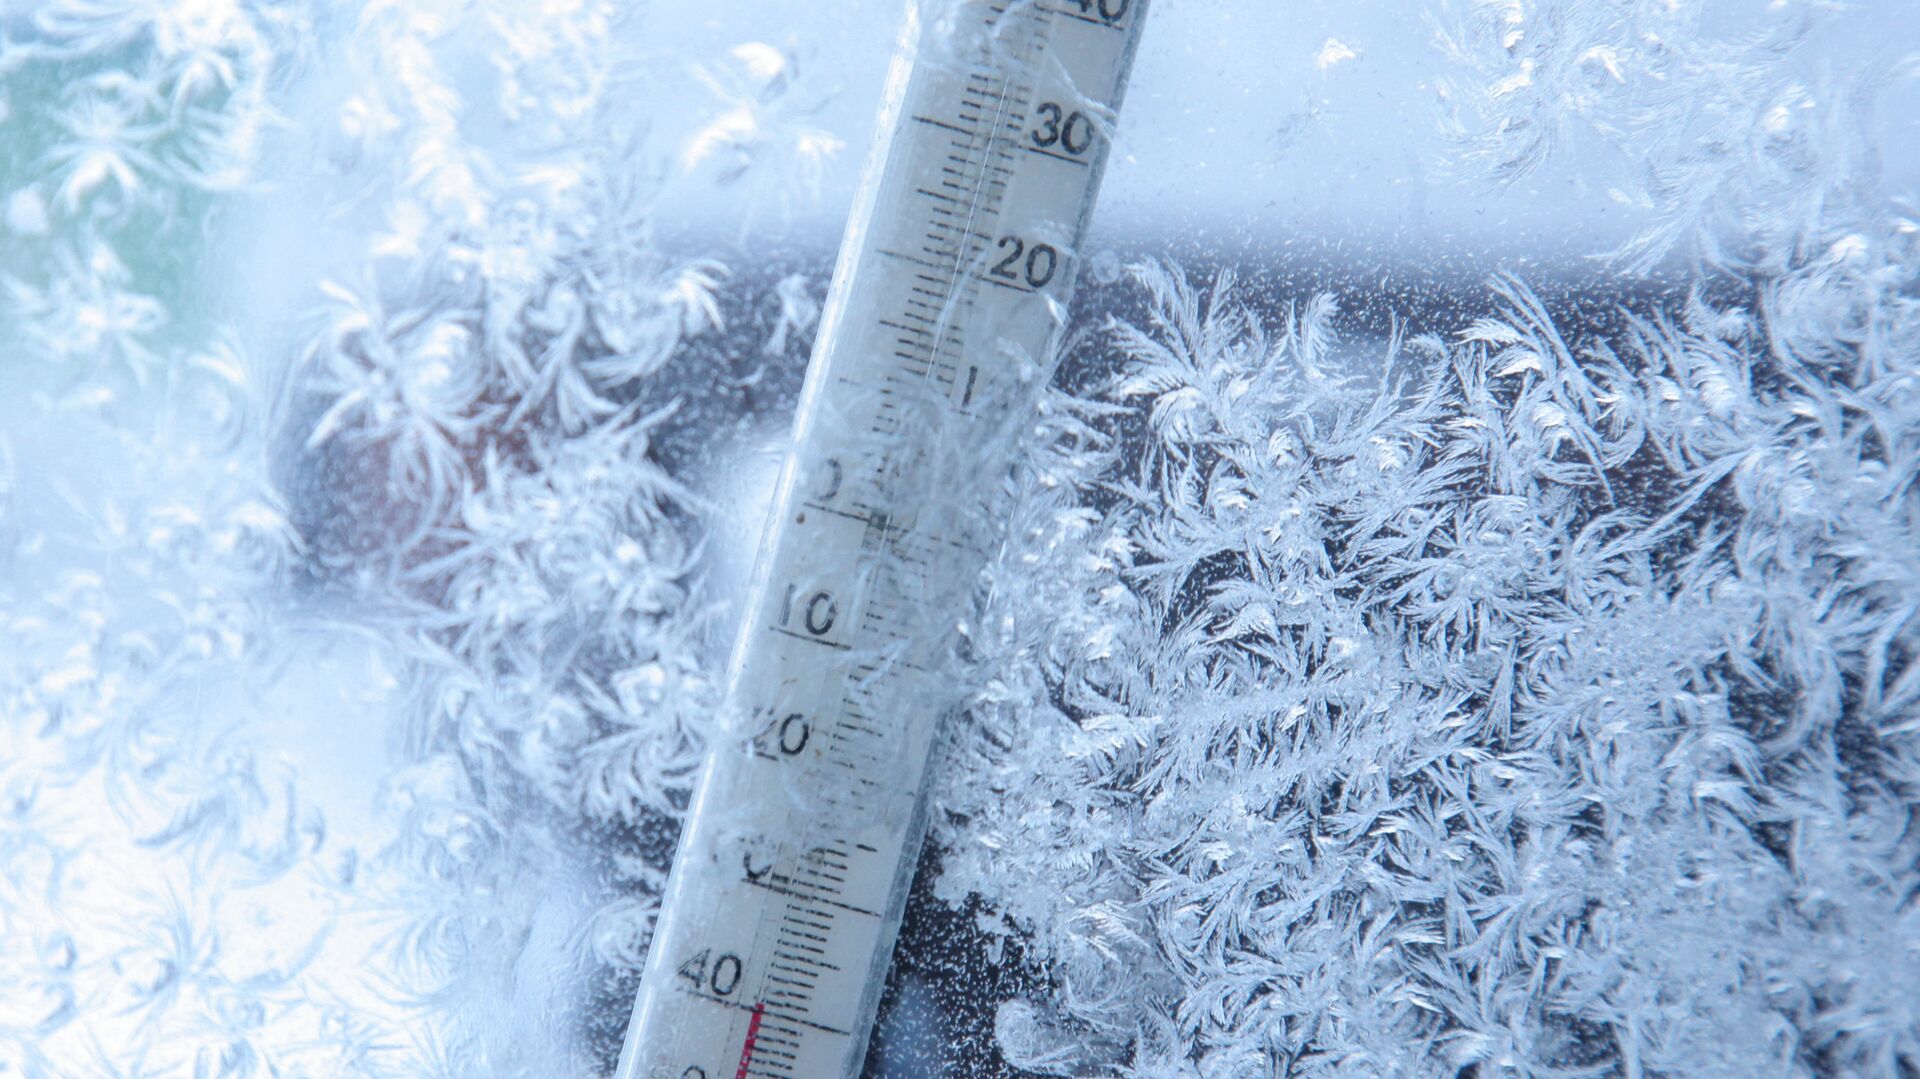 Экстренное предупреждение: в Усолье  ожидаются сильные морозы на 7-14° ниже климатической нормы.